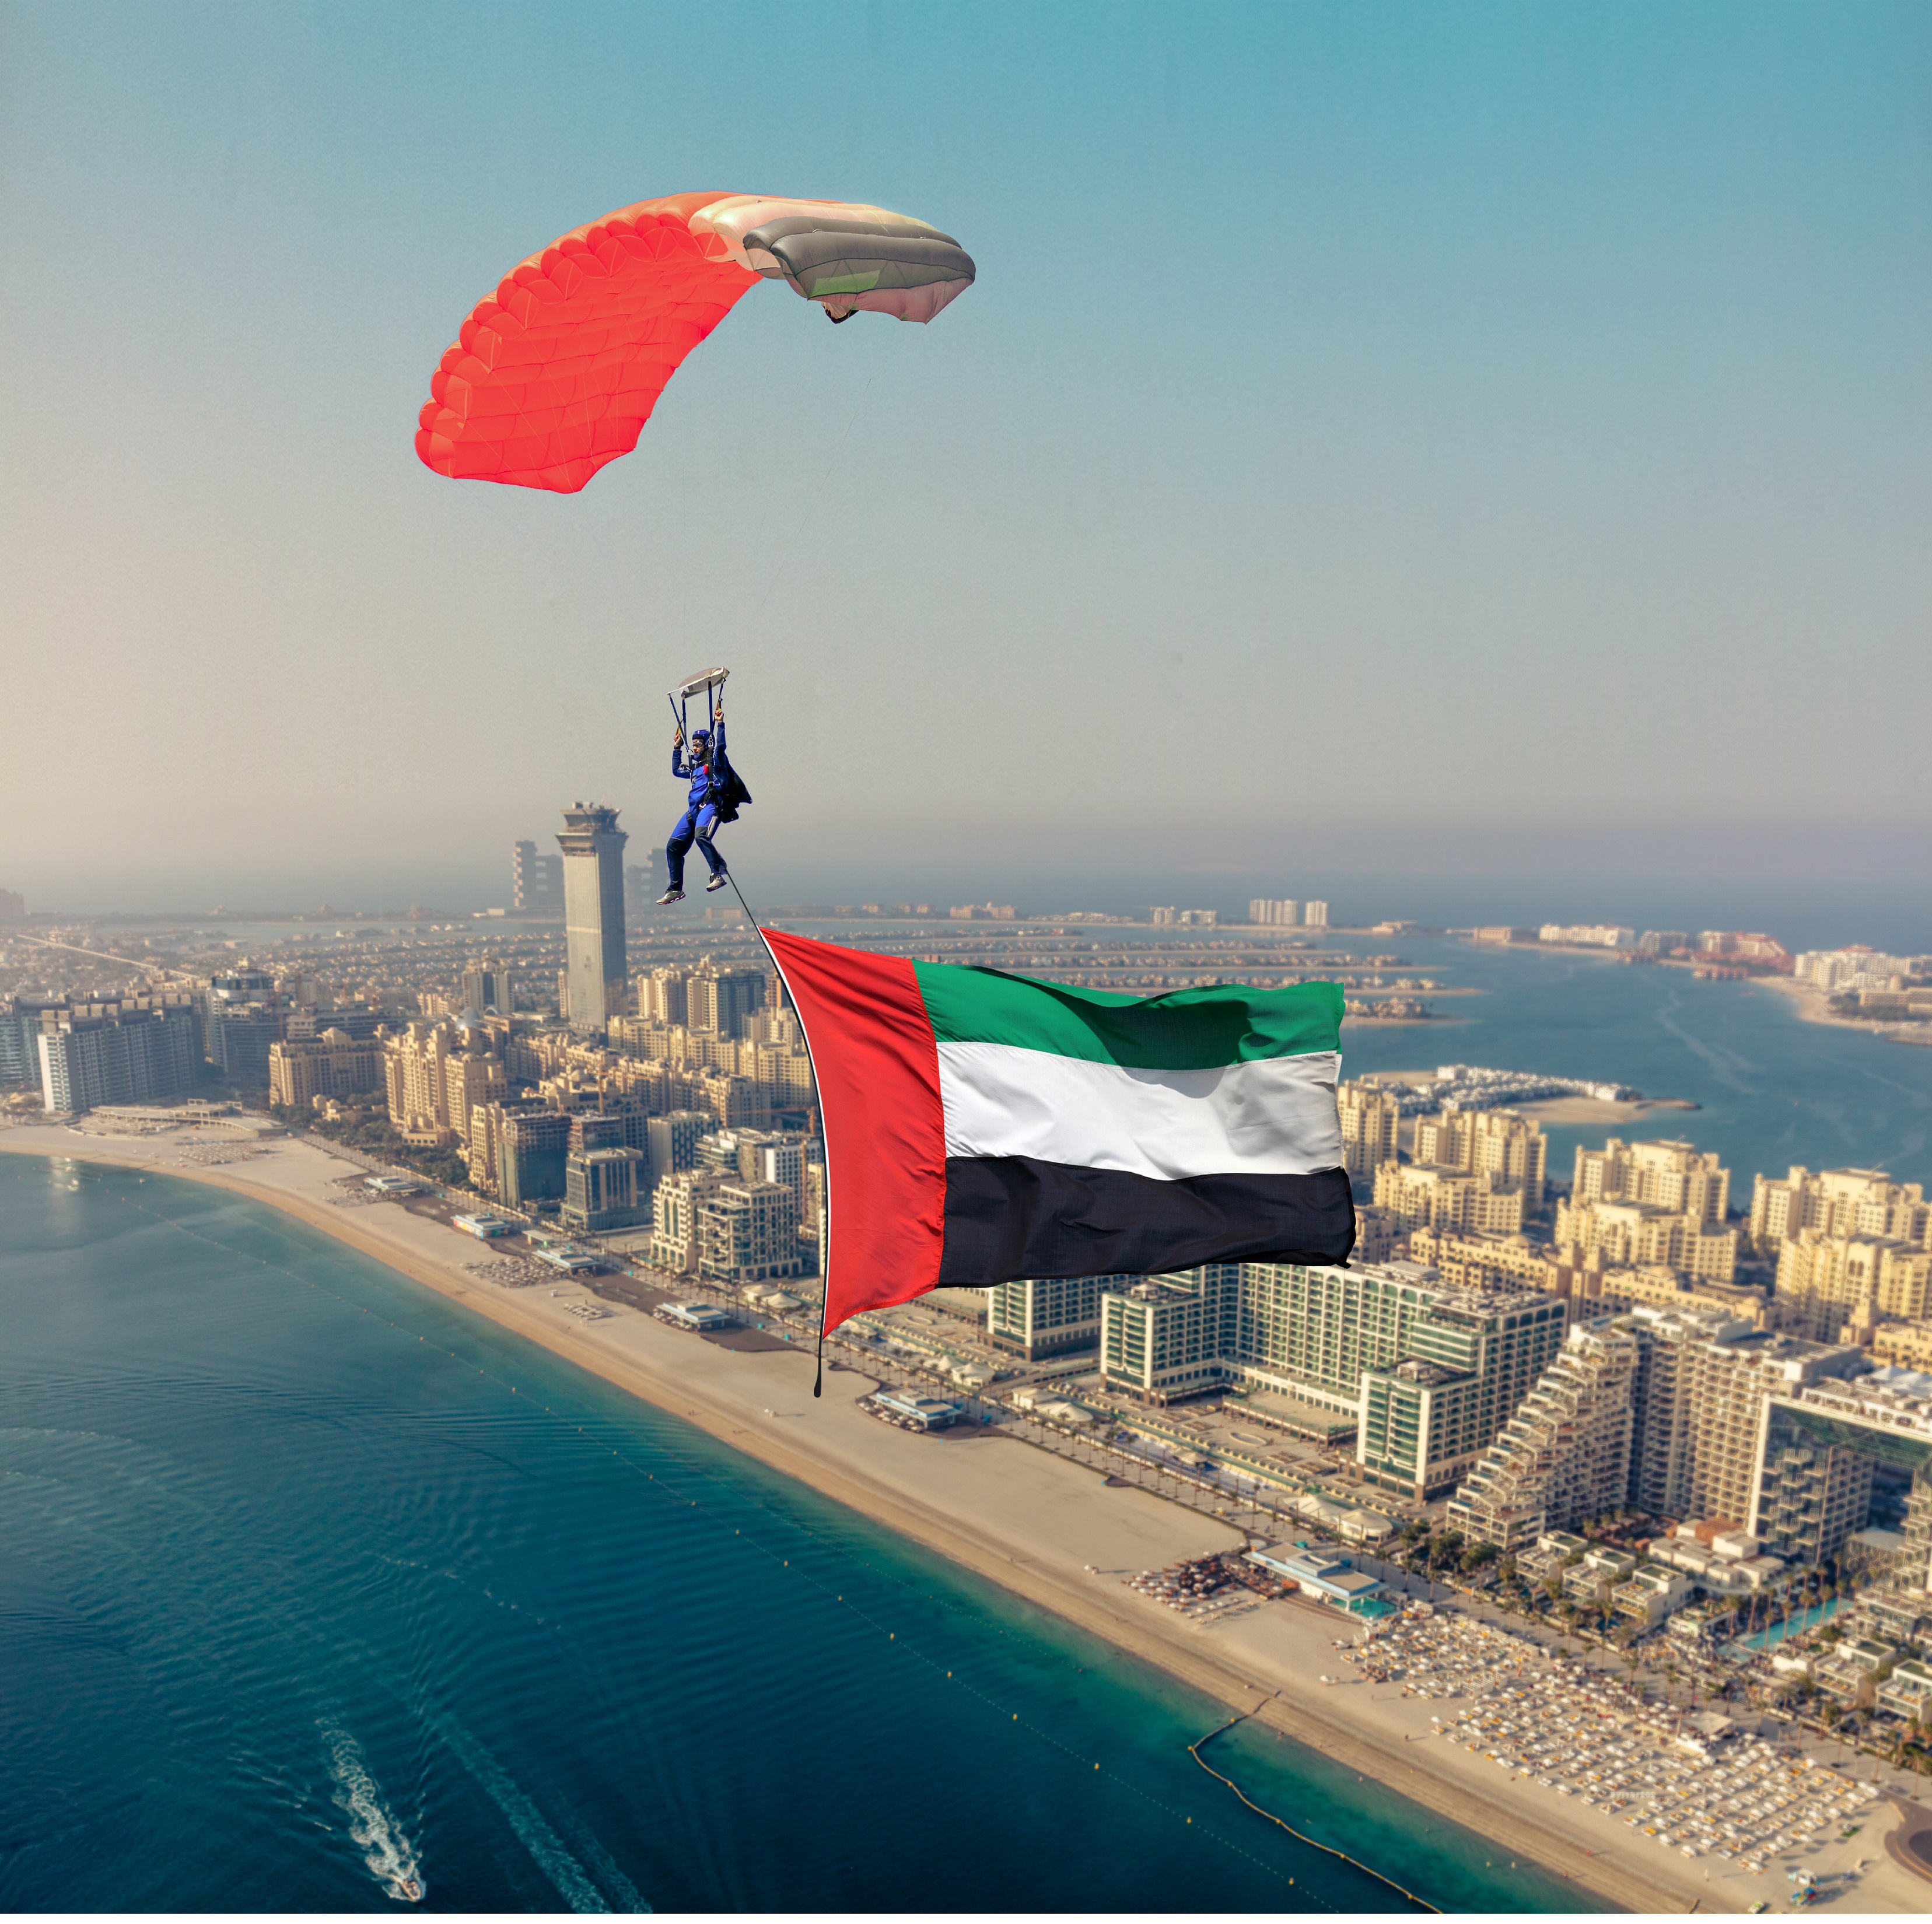 احتفل باليوم الوطني الخمسين لدولة الإمارات العربية المتحدة مع نخيل